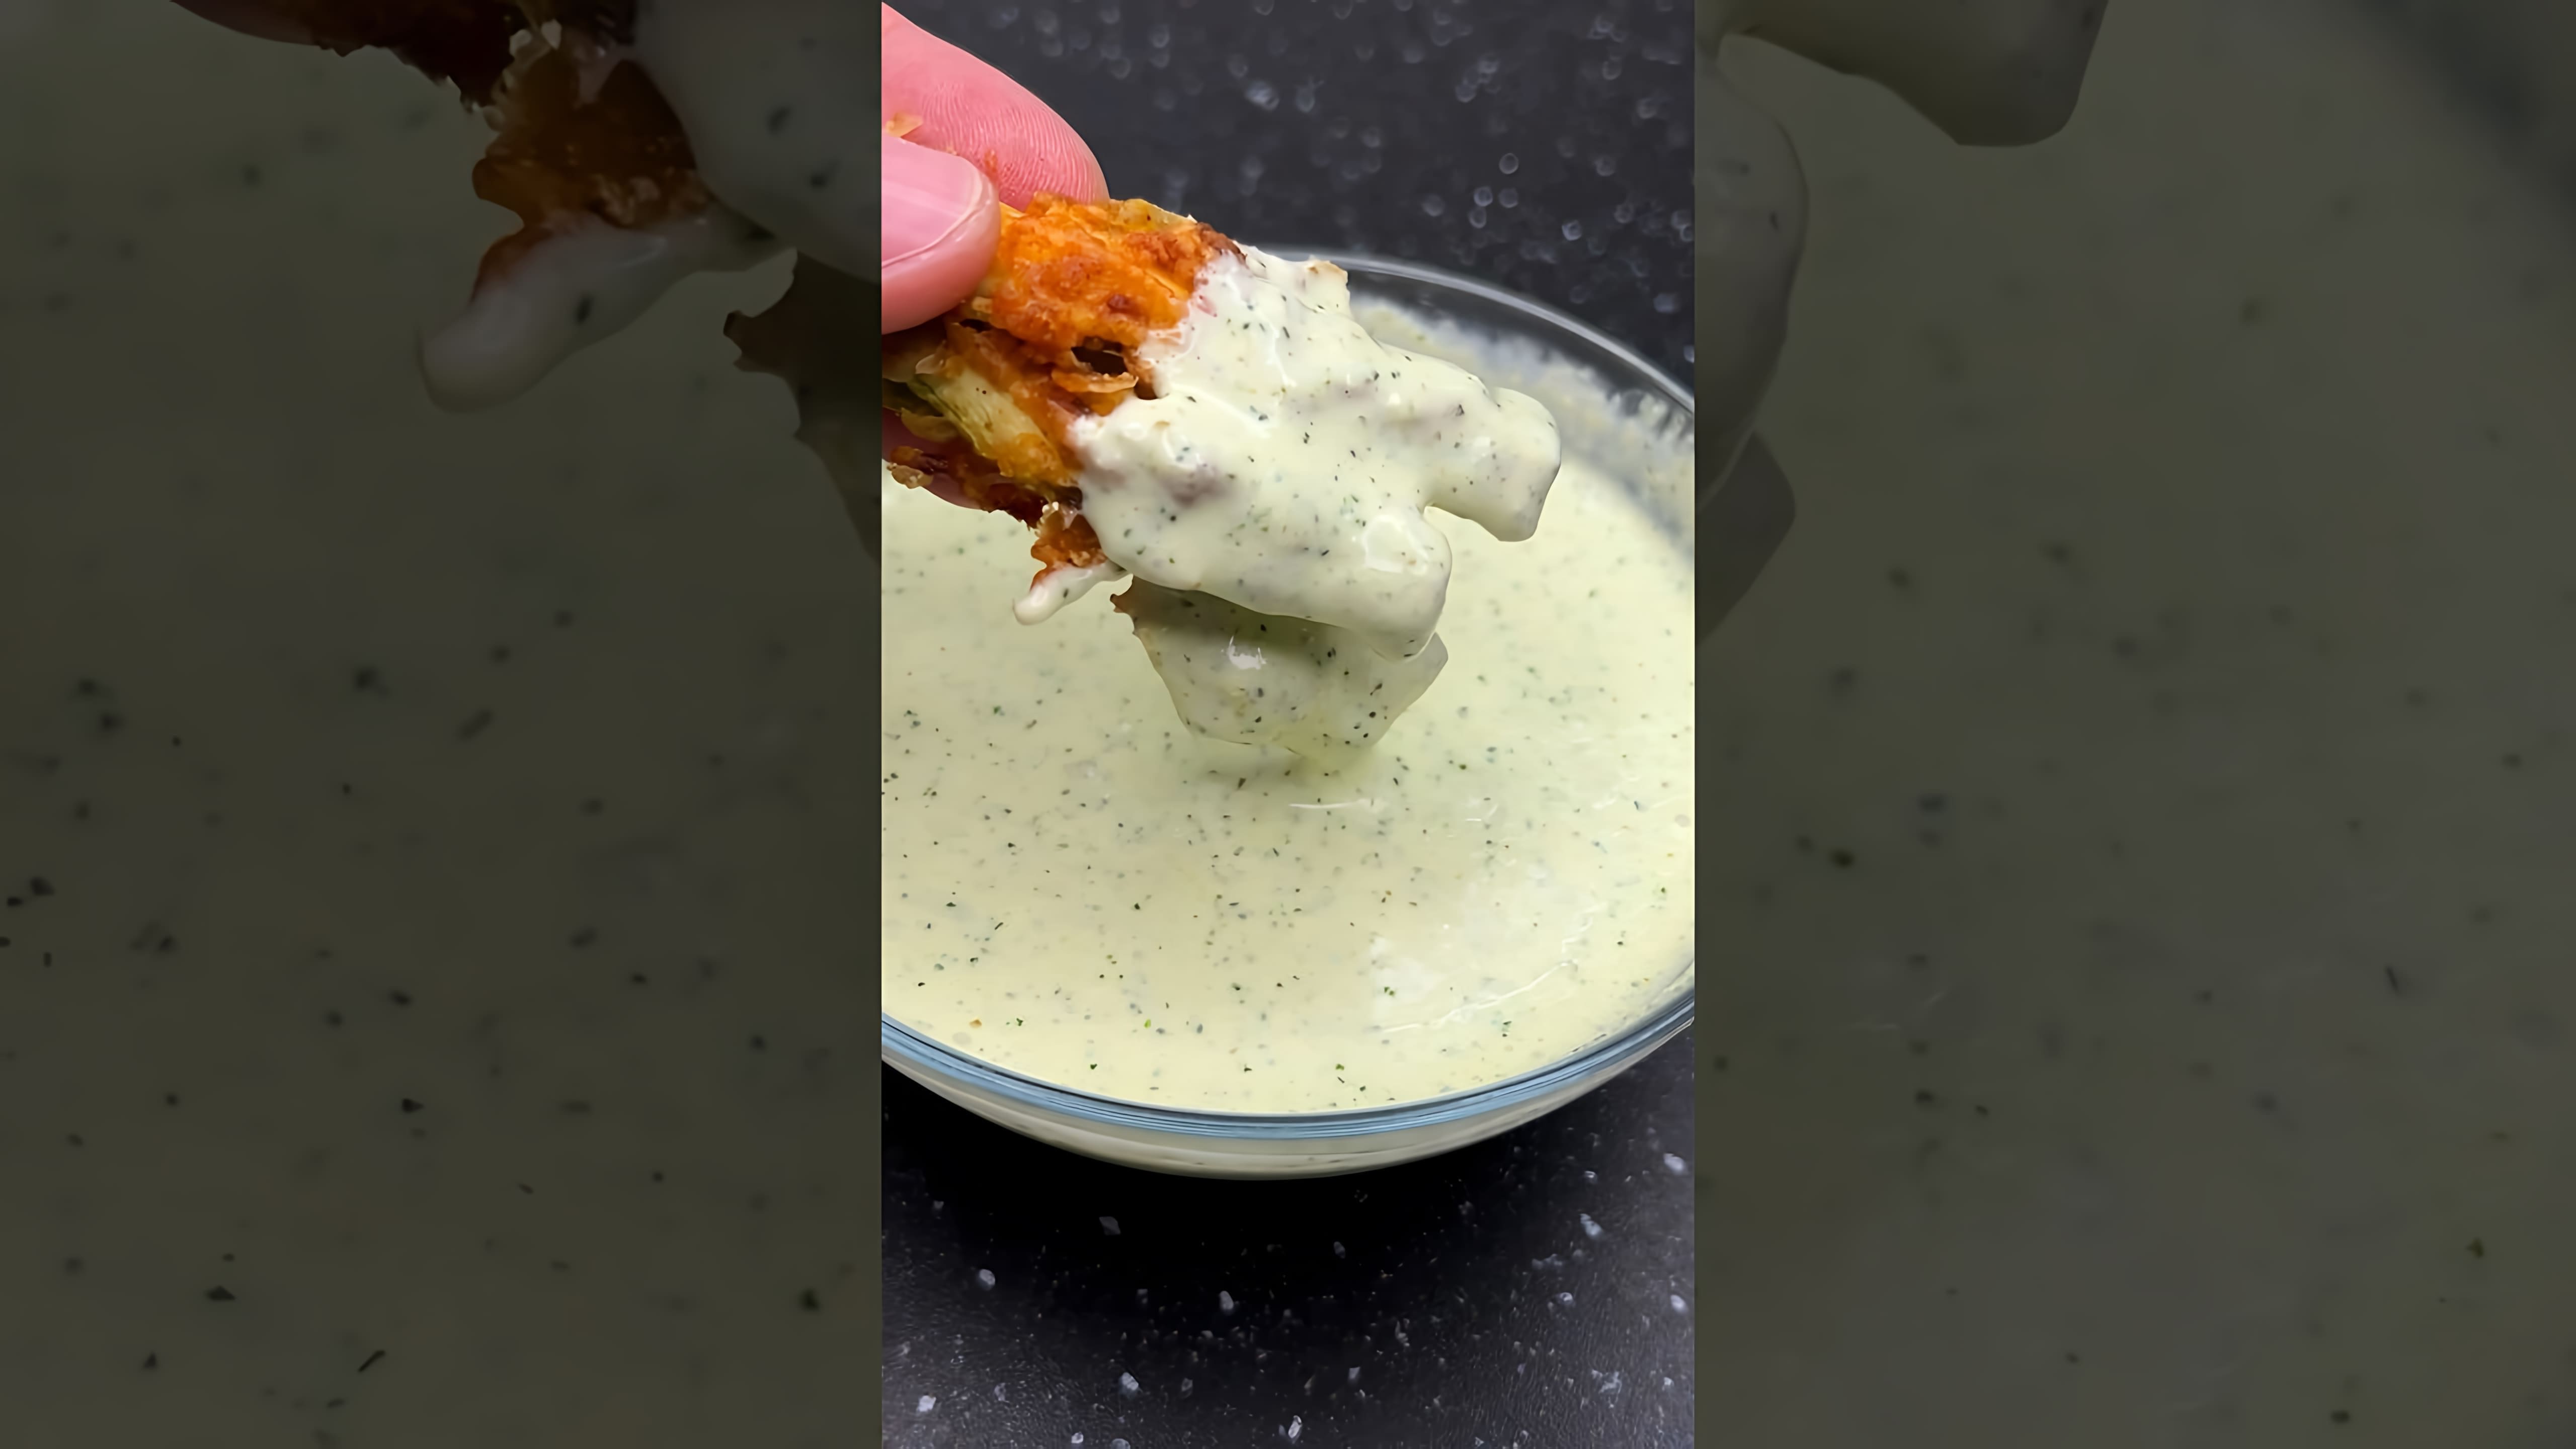 "Домашний соус Тартар - рецепт с ингредиентами" - это видео-ролик, который демонстрирует процесс приготовления домашнего соуса Тартар